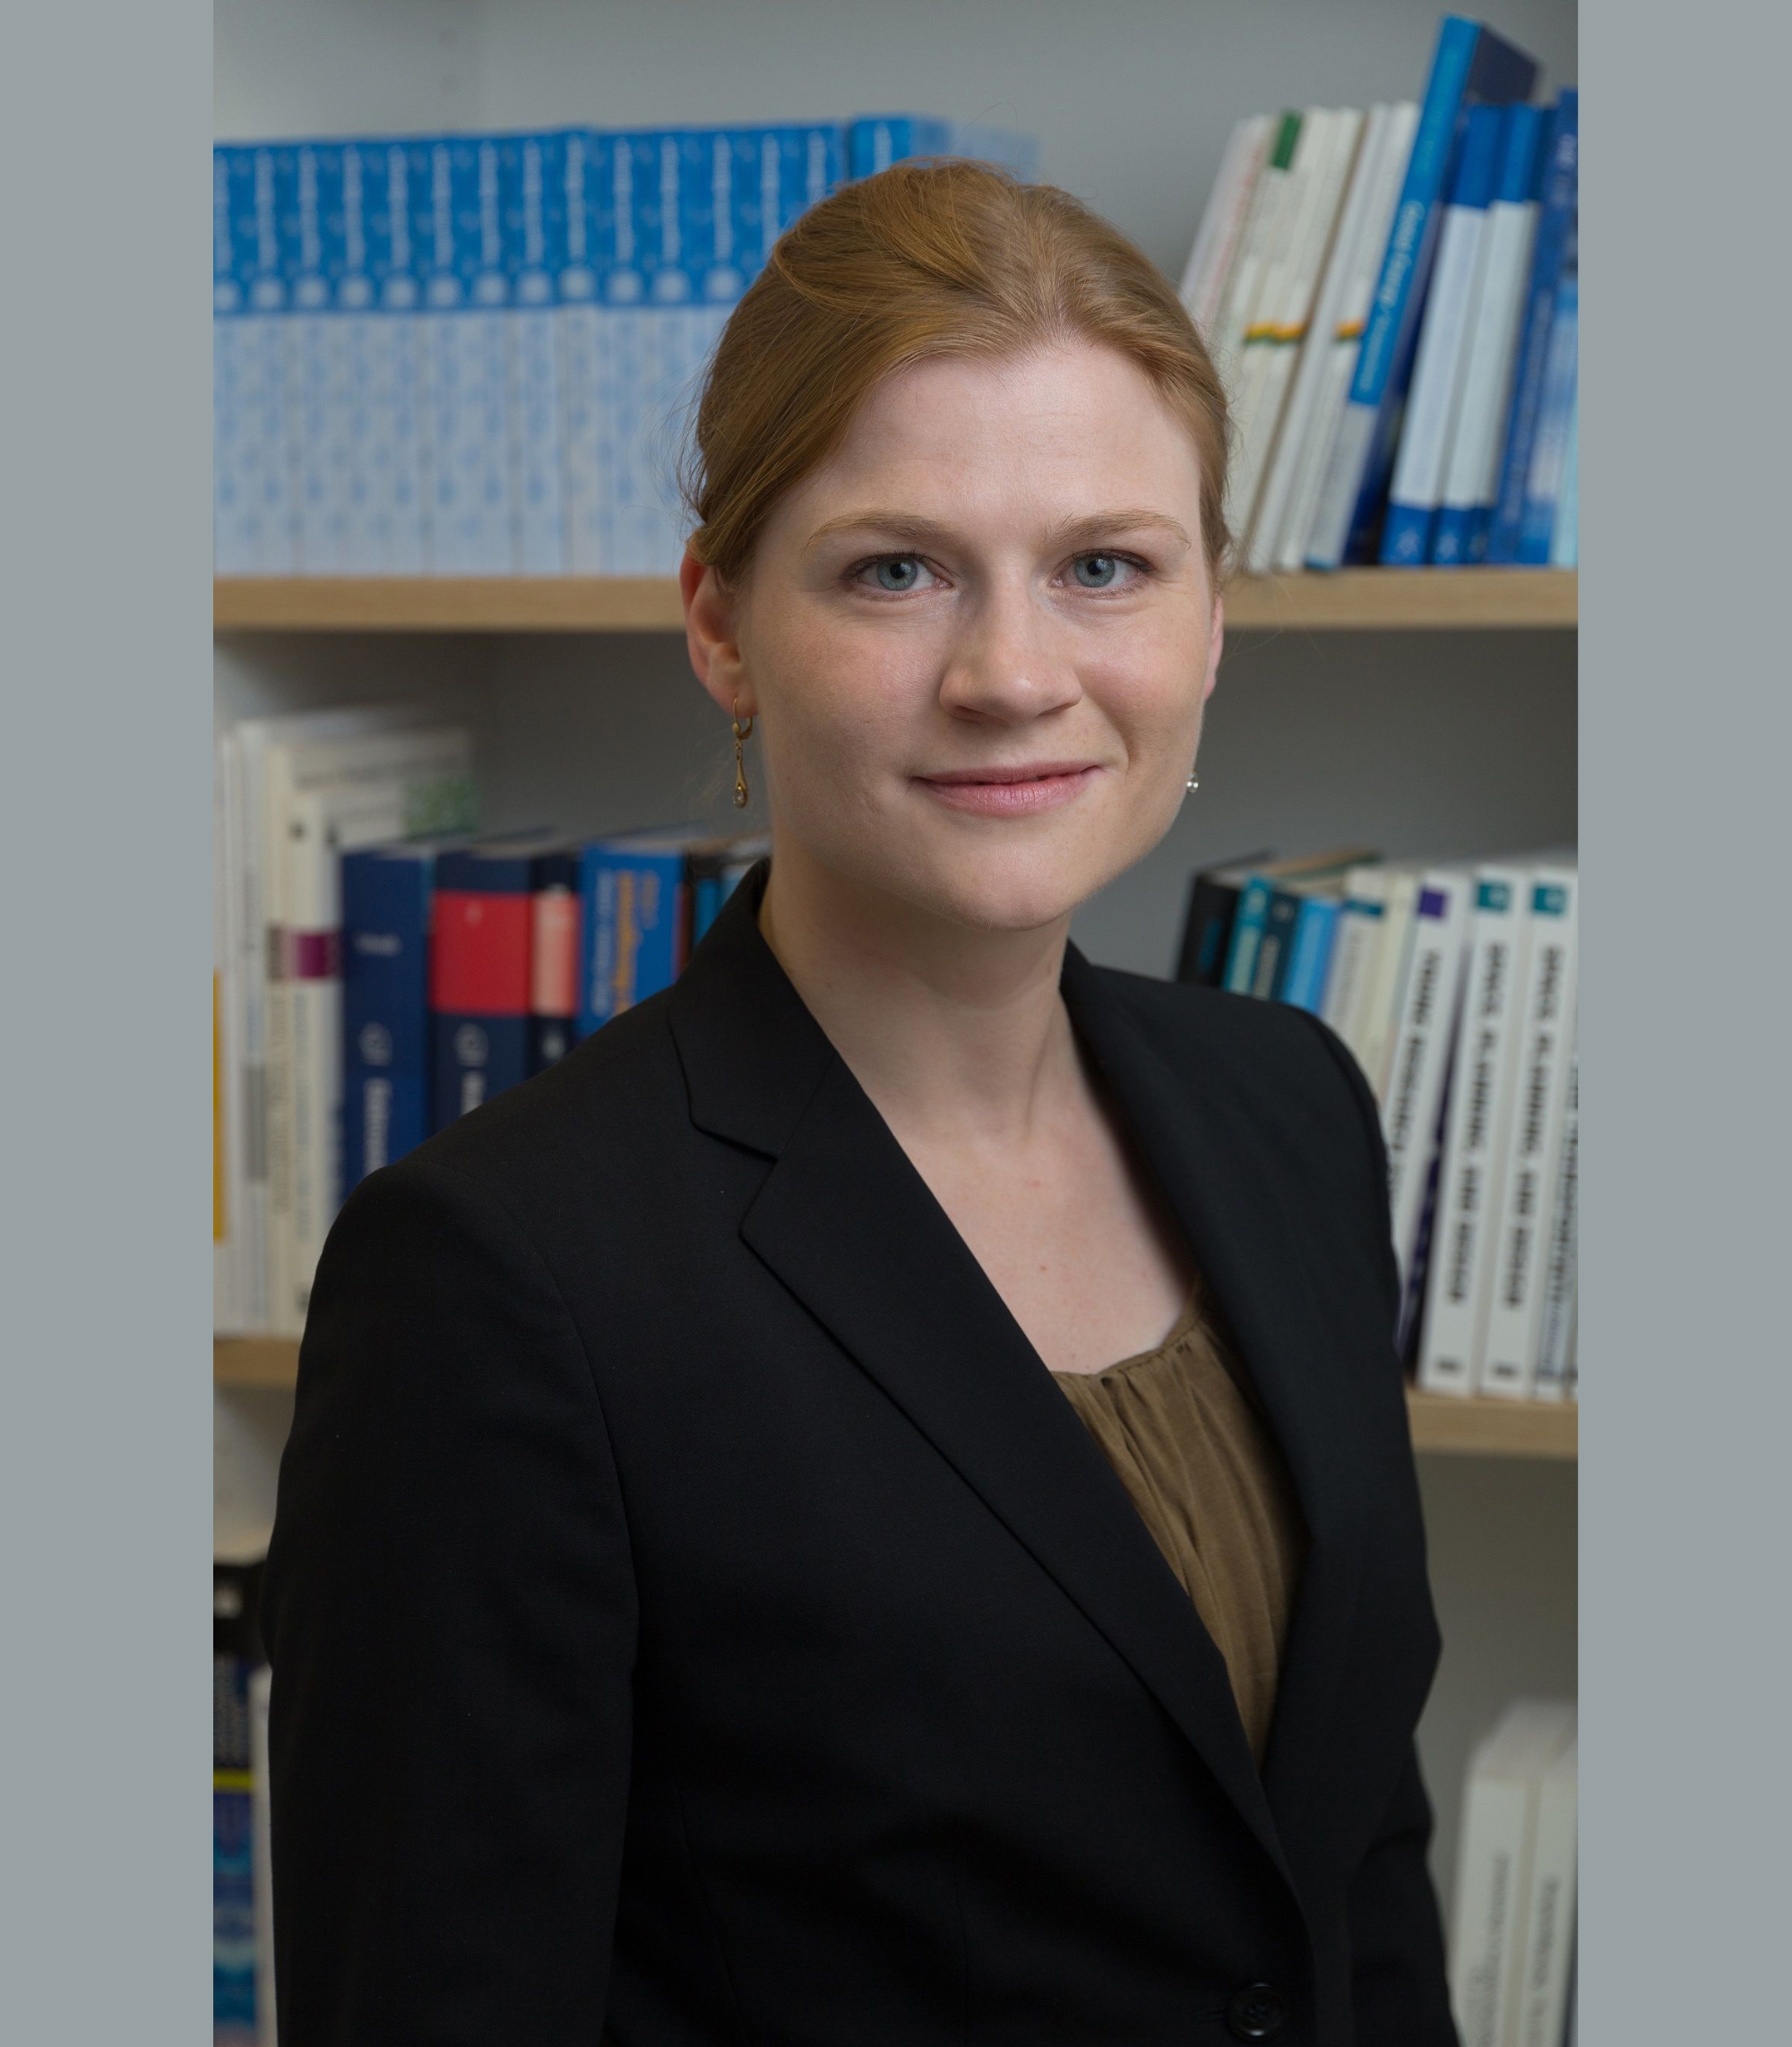 Dr.-Ing. Julia Kumm, Institut für Energiewirtschaft und Rationelle Energieanwendung